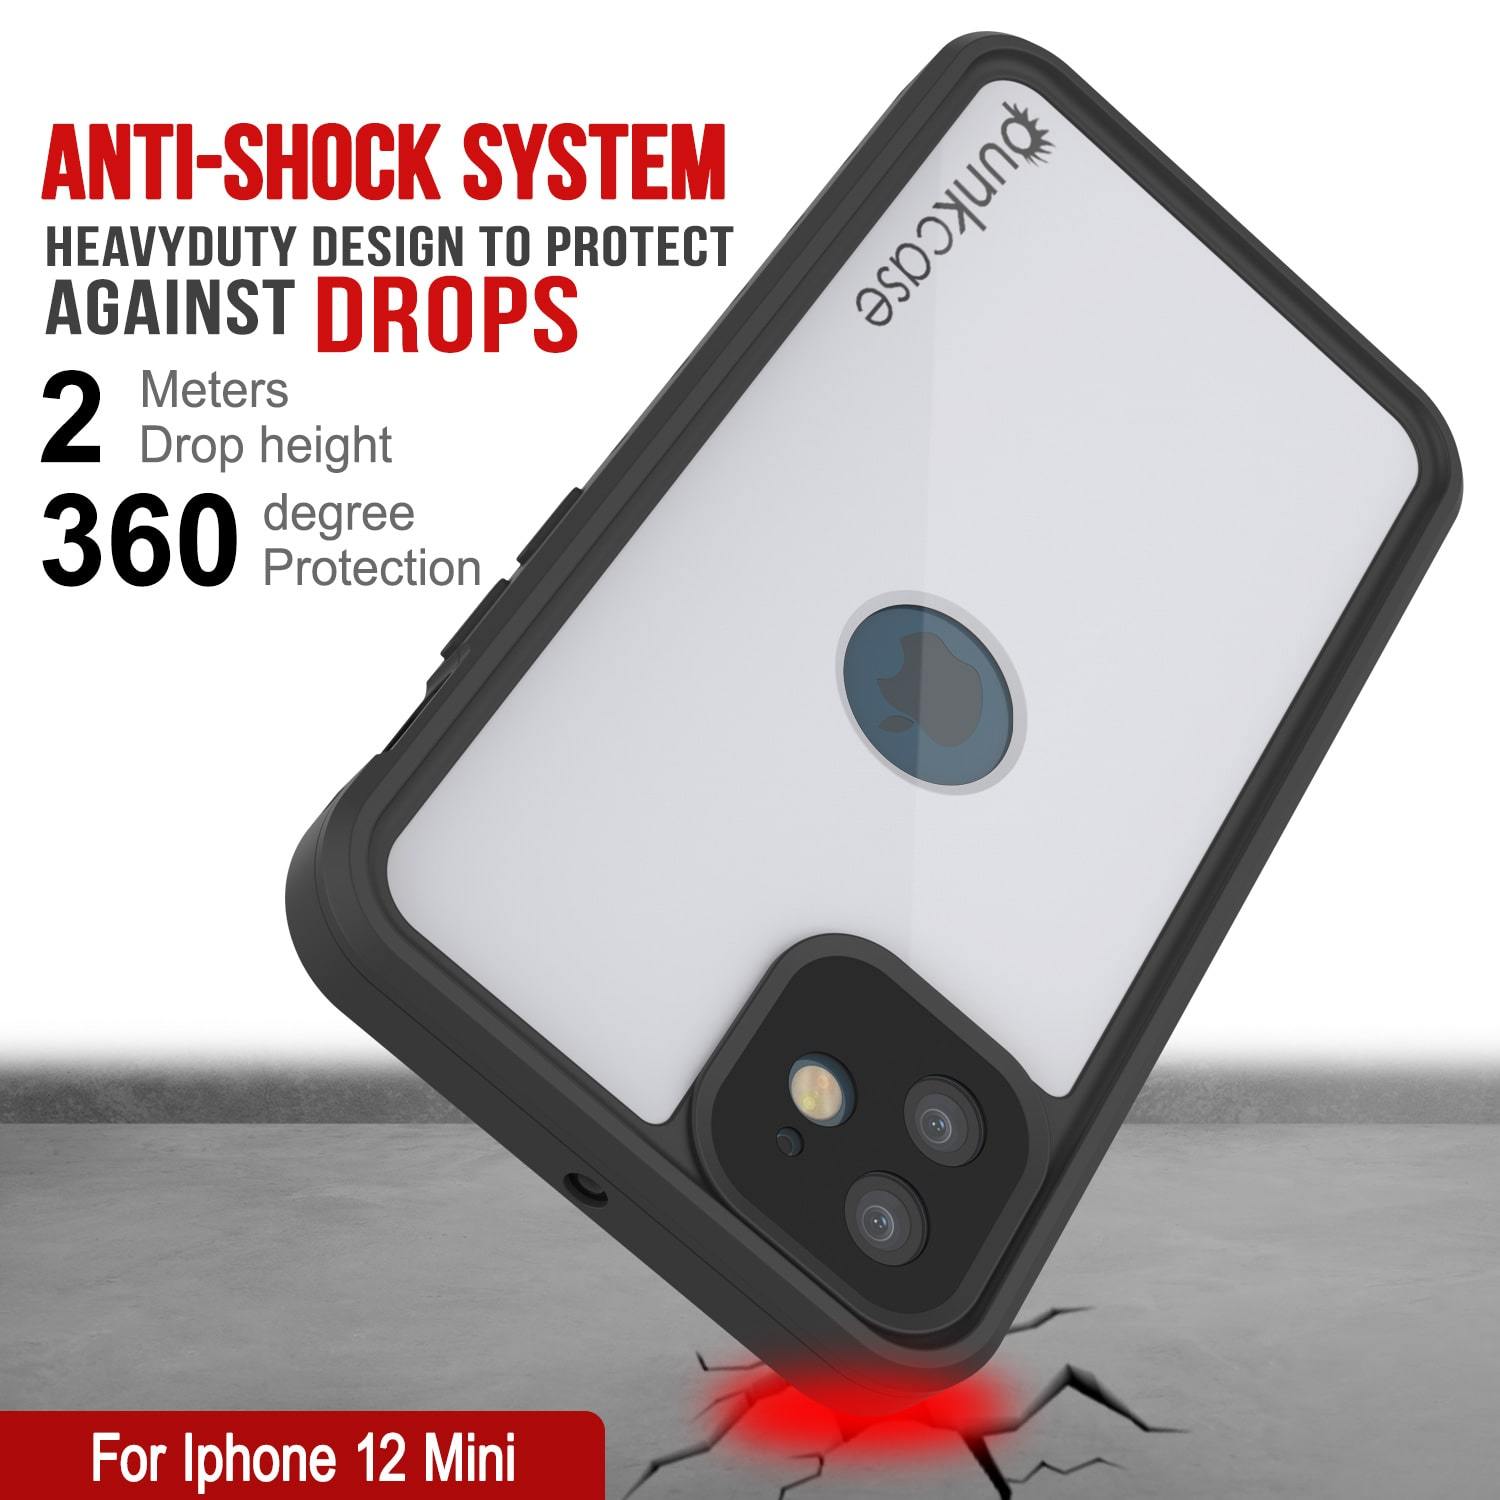 iPhone 12 Mini Waterproof IP68 Case, Punkcase [White] [StudStar Series] [Slim Fit] [Dirtproof]